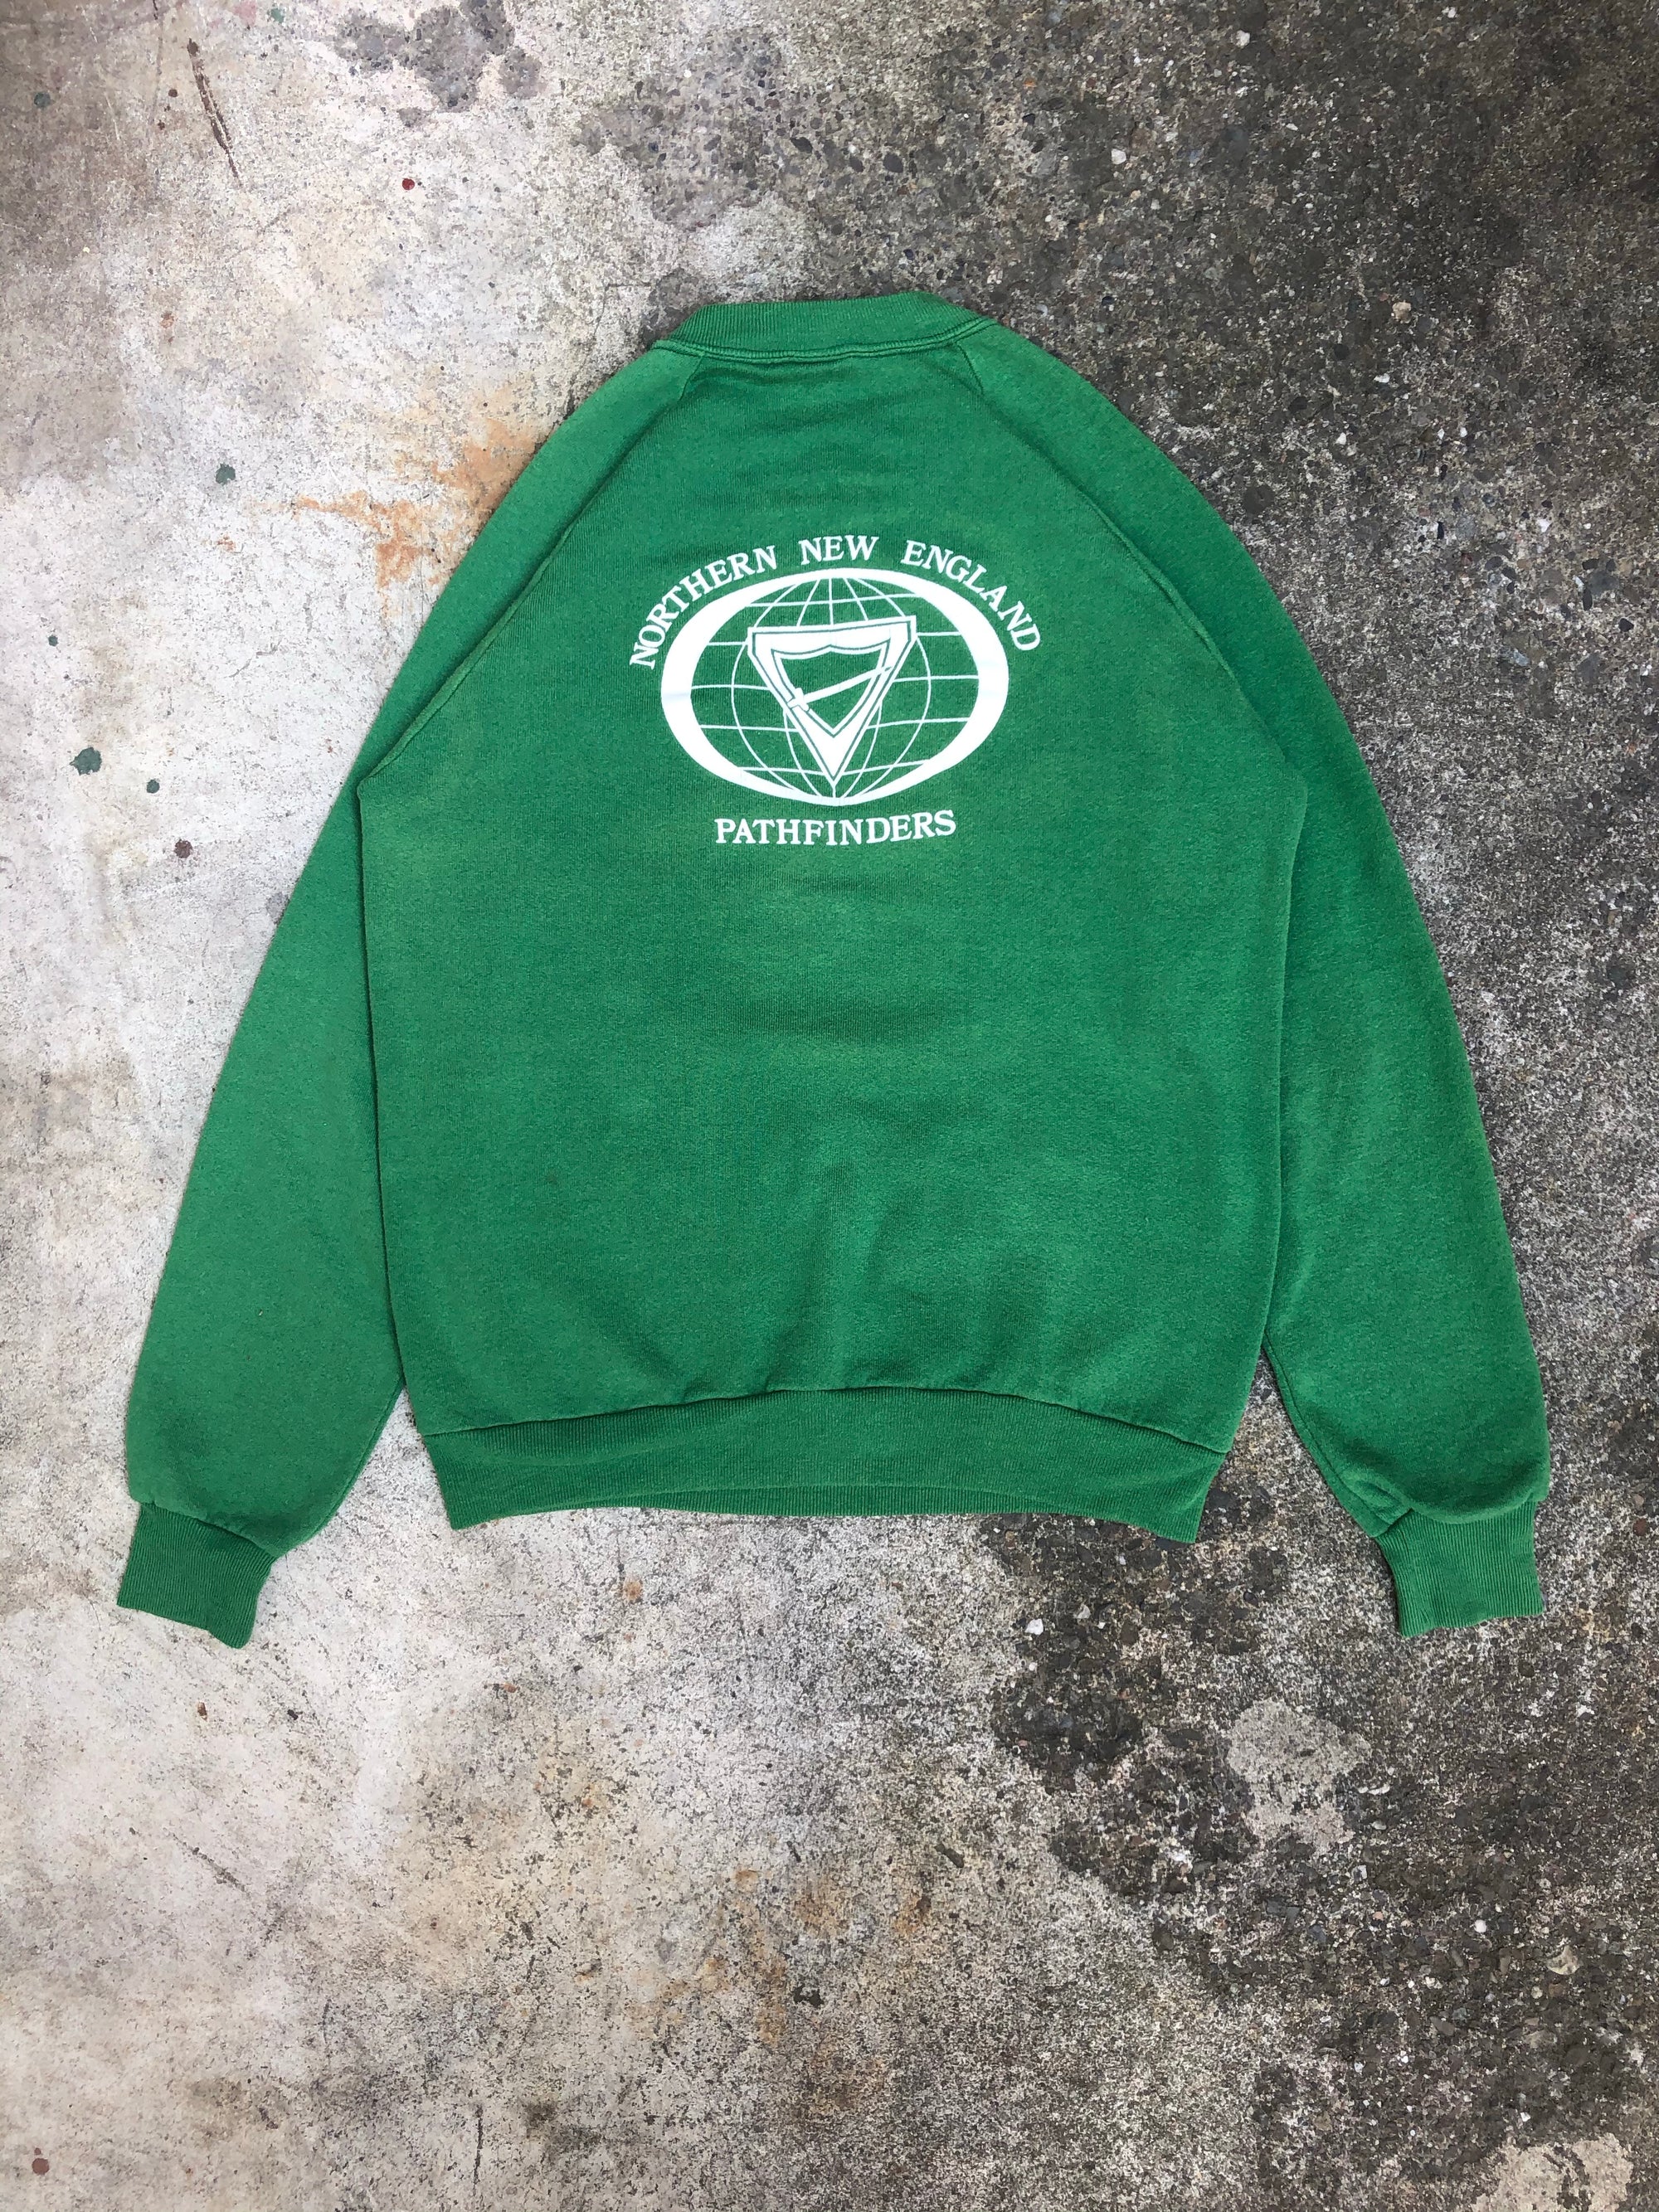 1980s Green "Oxford Woodsmen Pathfinder Club" Sweatshirt